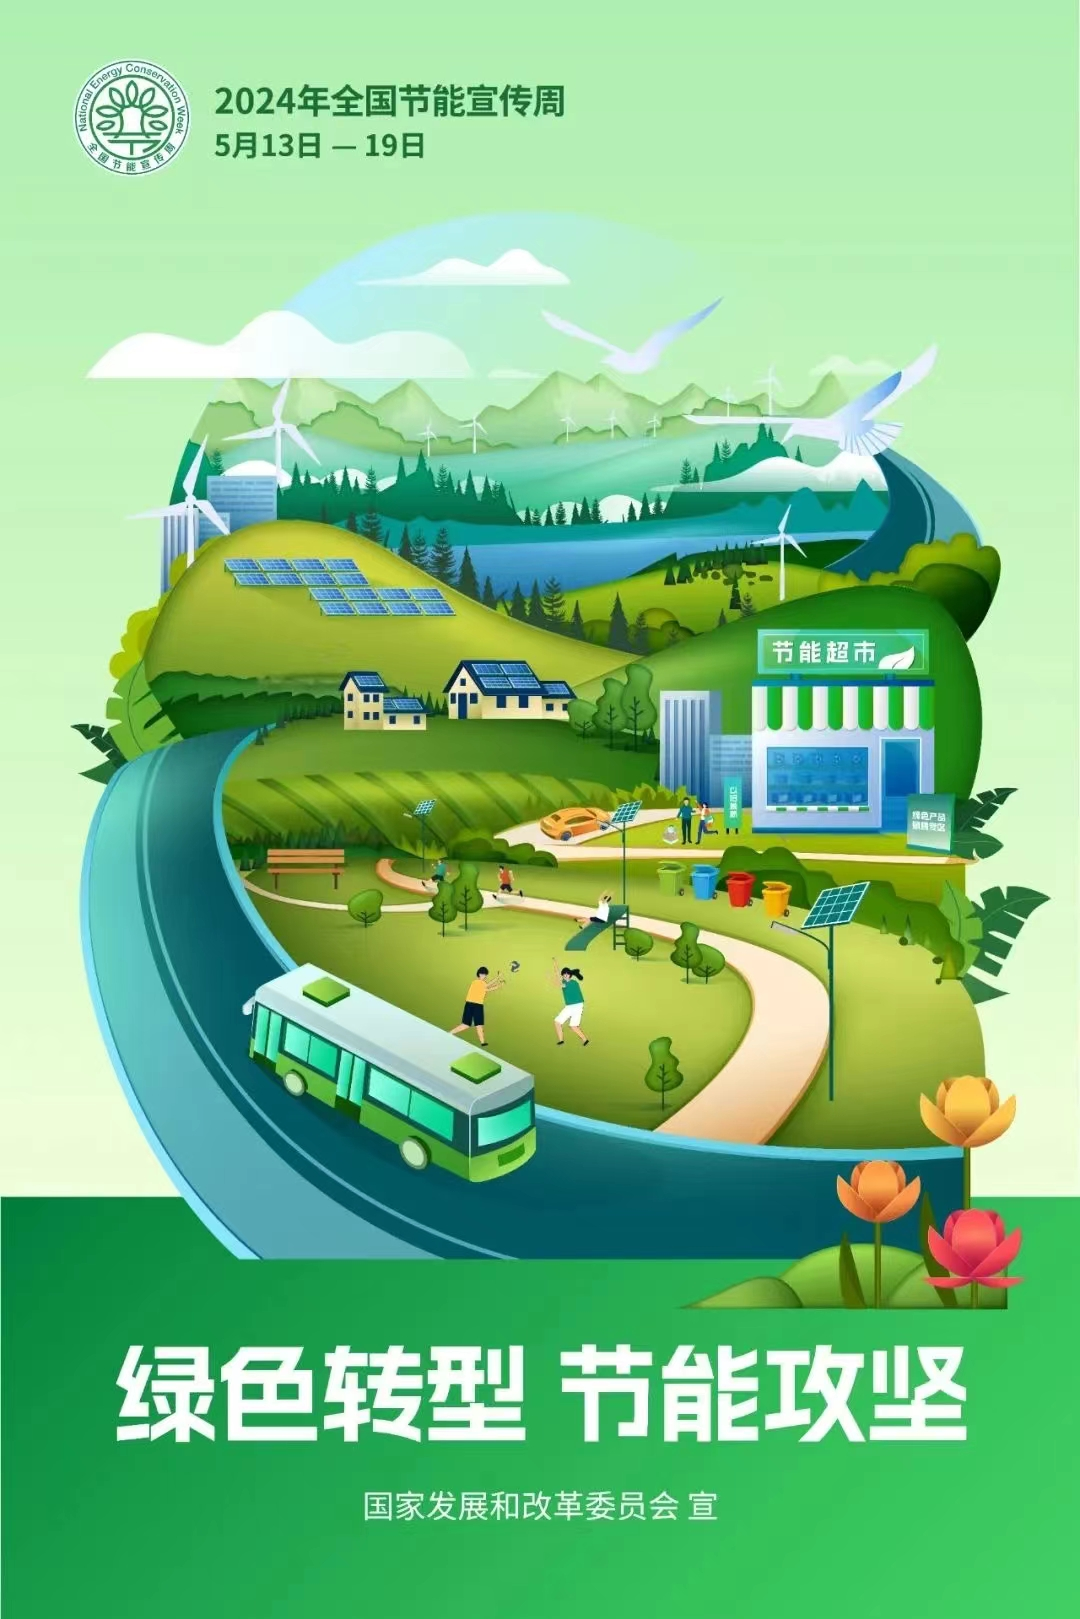 倡导绿色出行——宜宾公交开展“绿色交通 低碳转型 ”为主题的节能宣传周活动